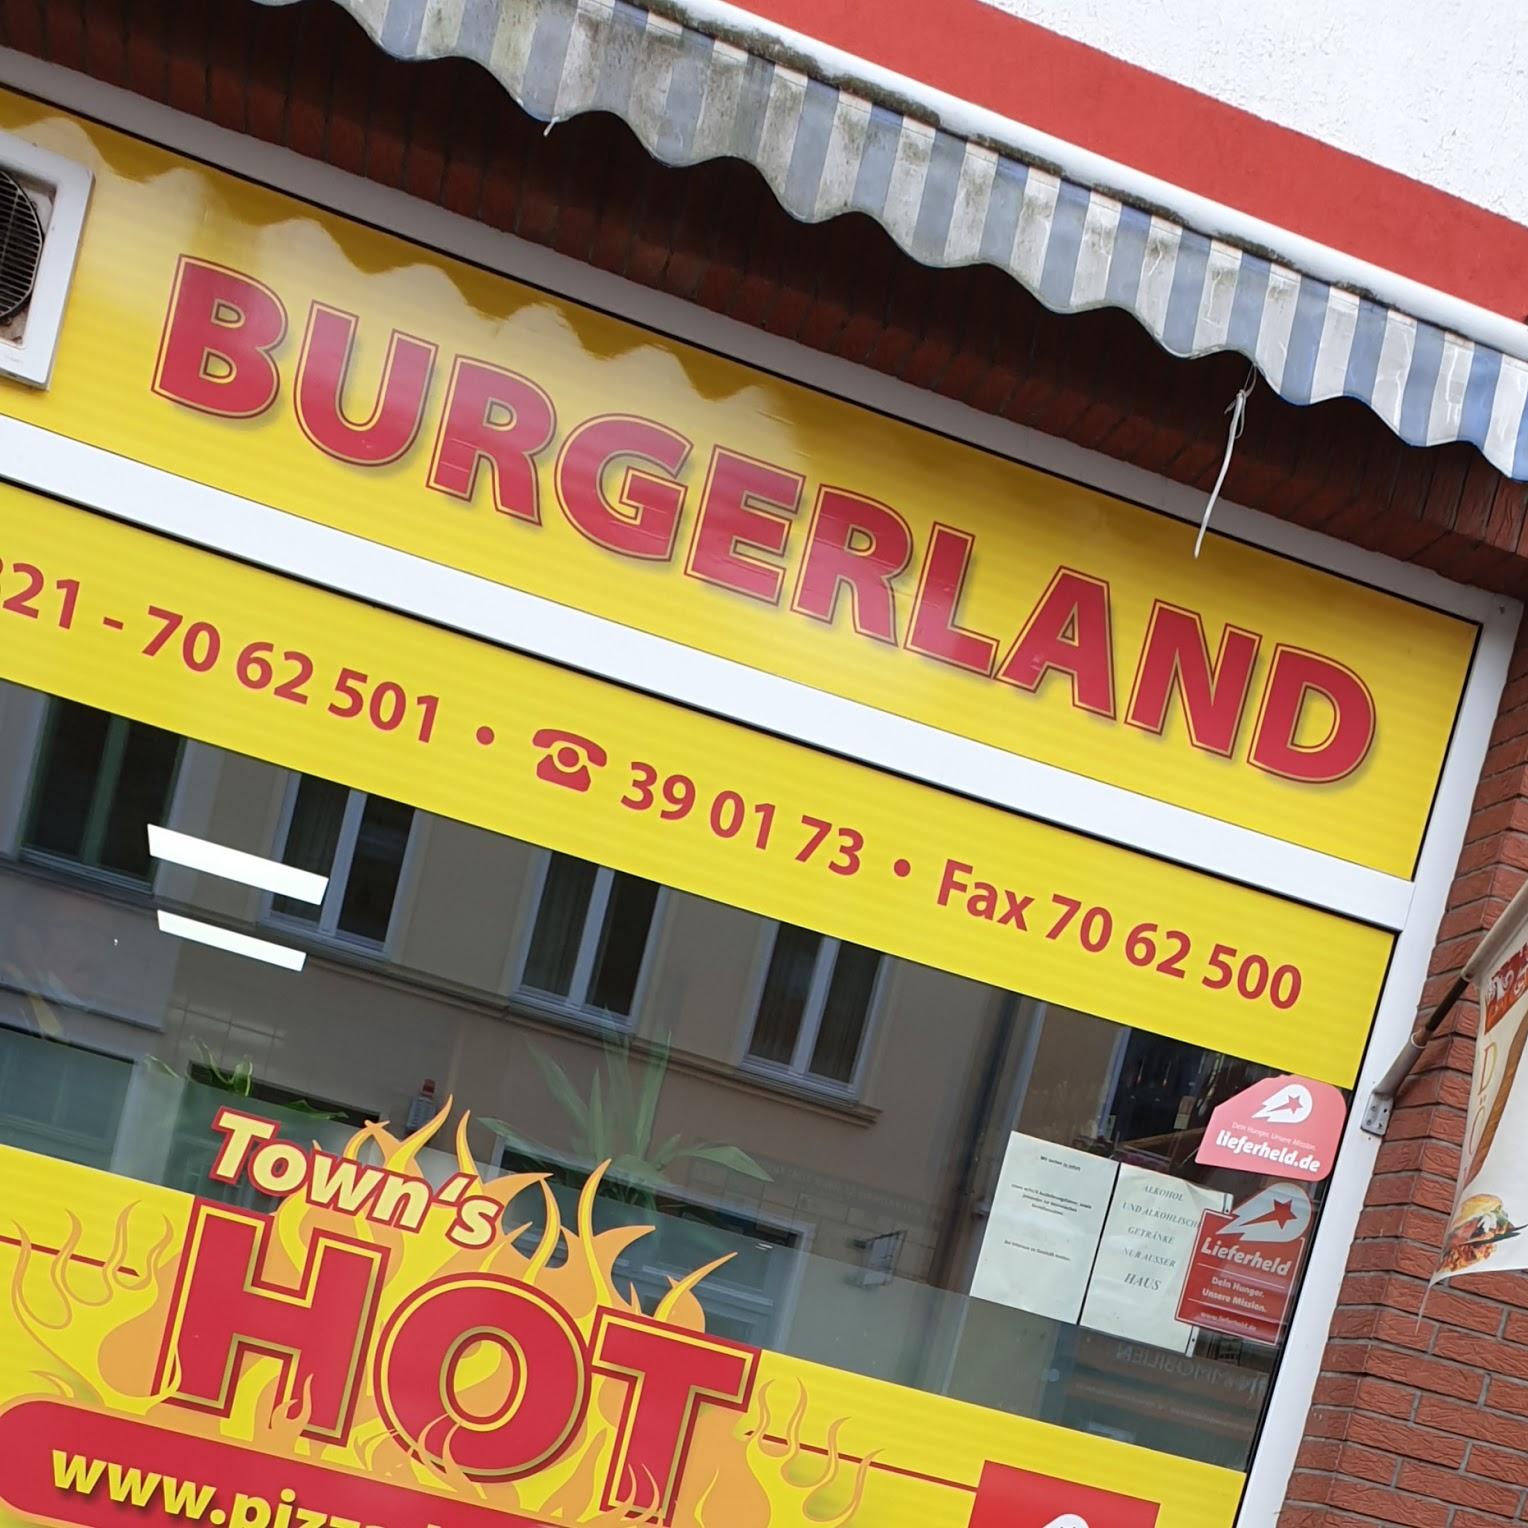 Restaurant "Burgerland" in  Ribnitz-Damgarten